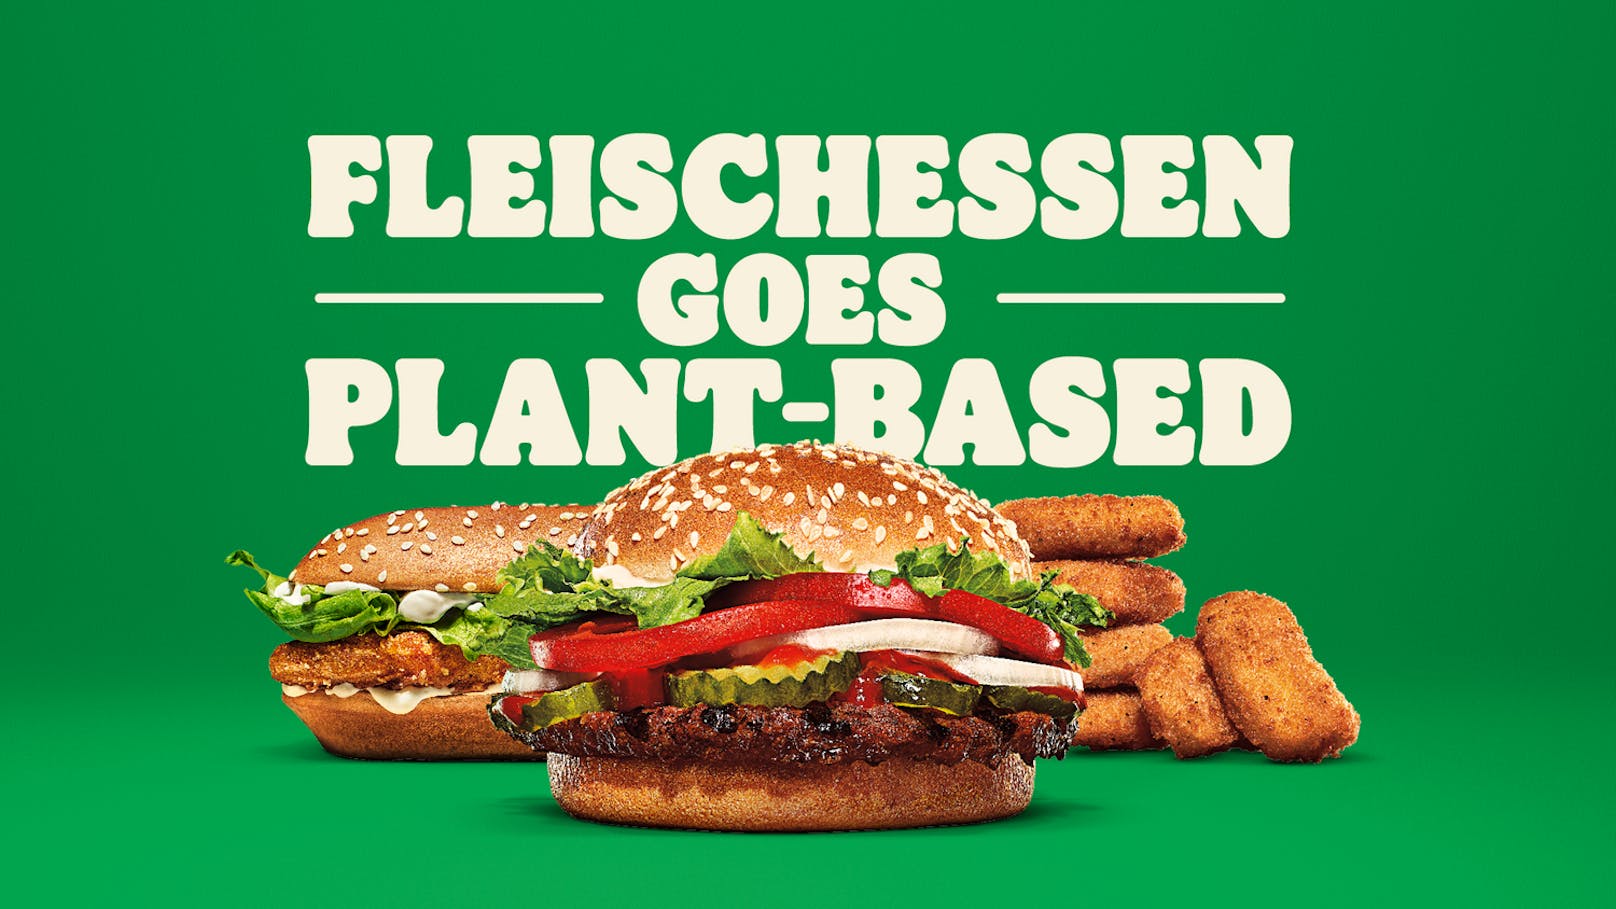 "Fleischessen goes plant-based" heißt der Werbeslogan.